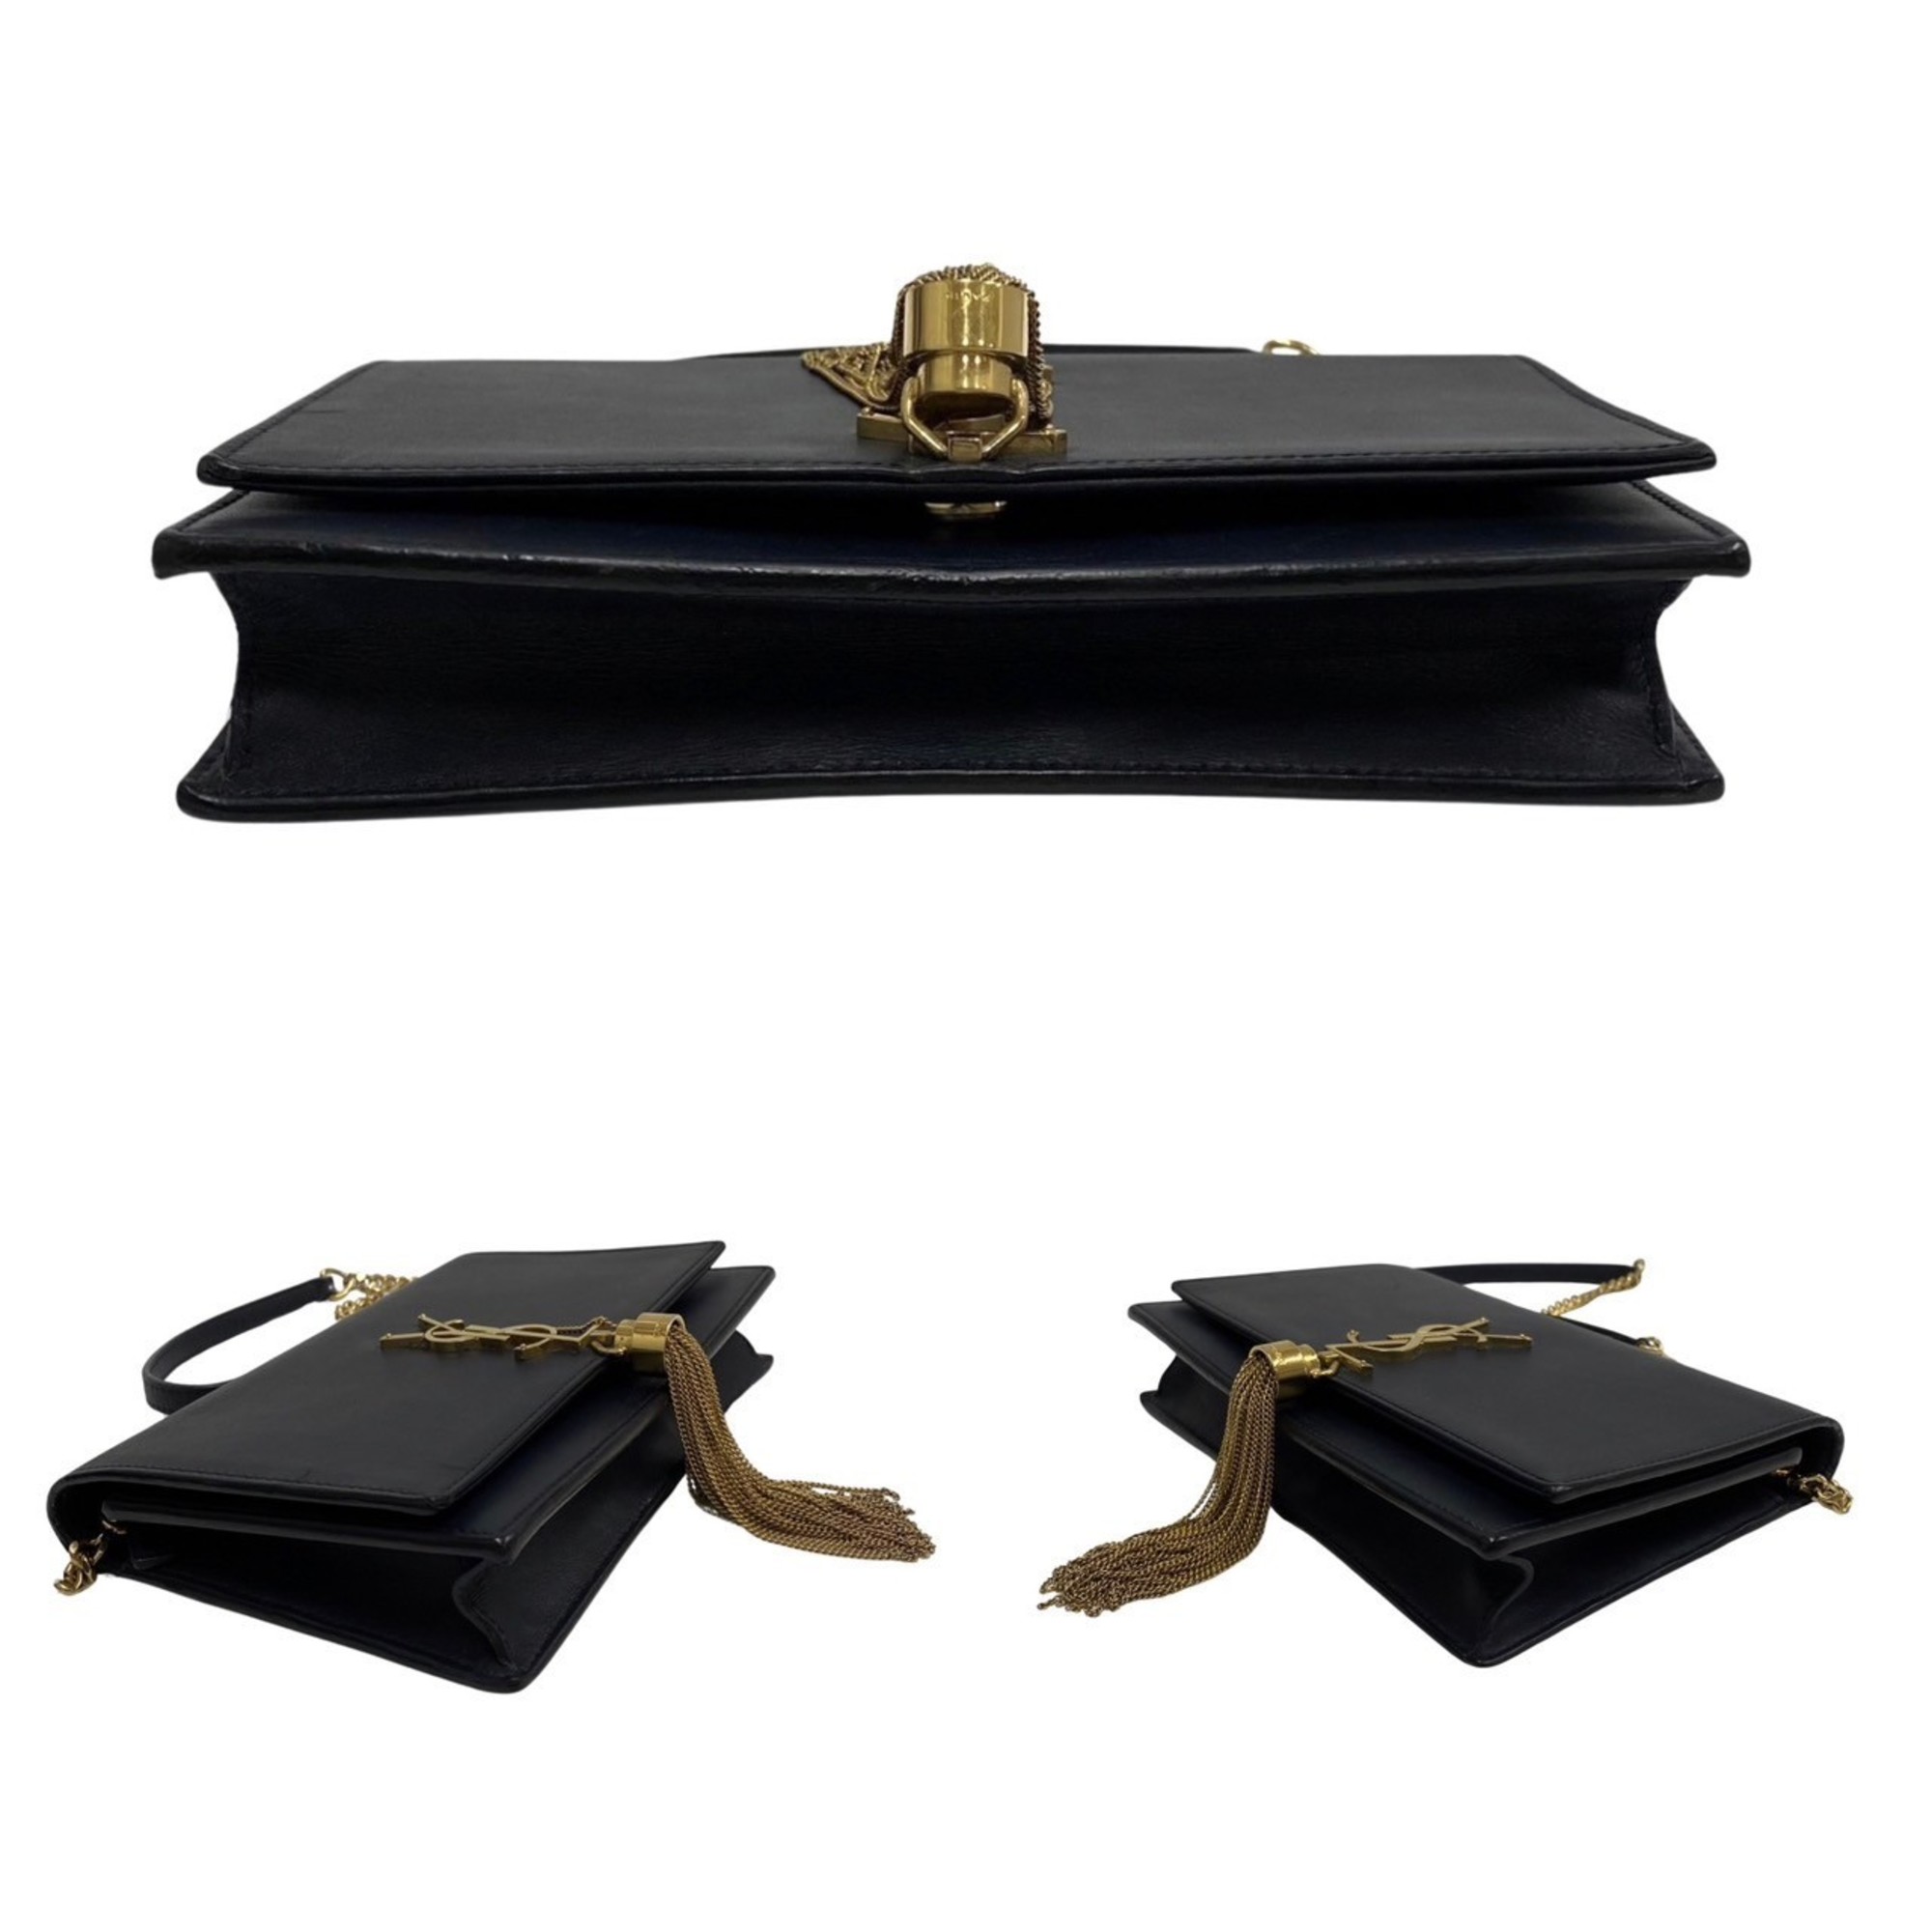 Yves Saint Laurent SAINT LAURENT PARIS YSL Logo Classic Kate Monogram Leather Shoulder Bag Navy 32416